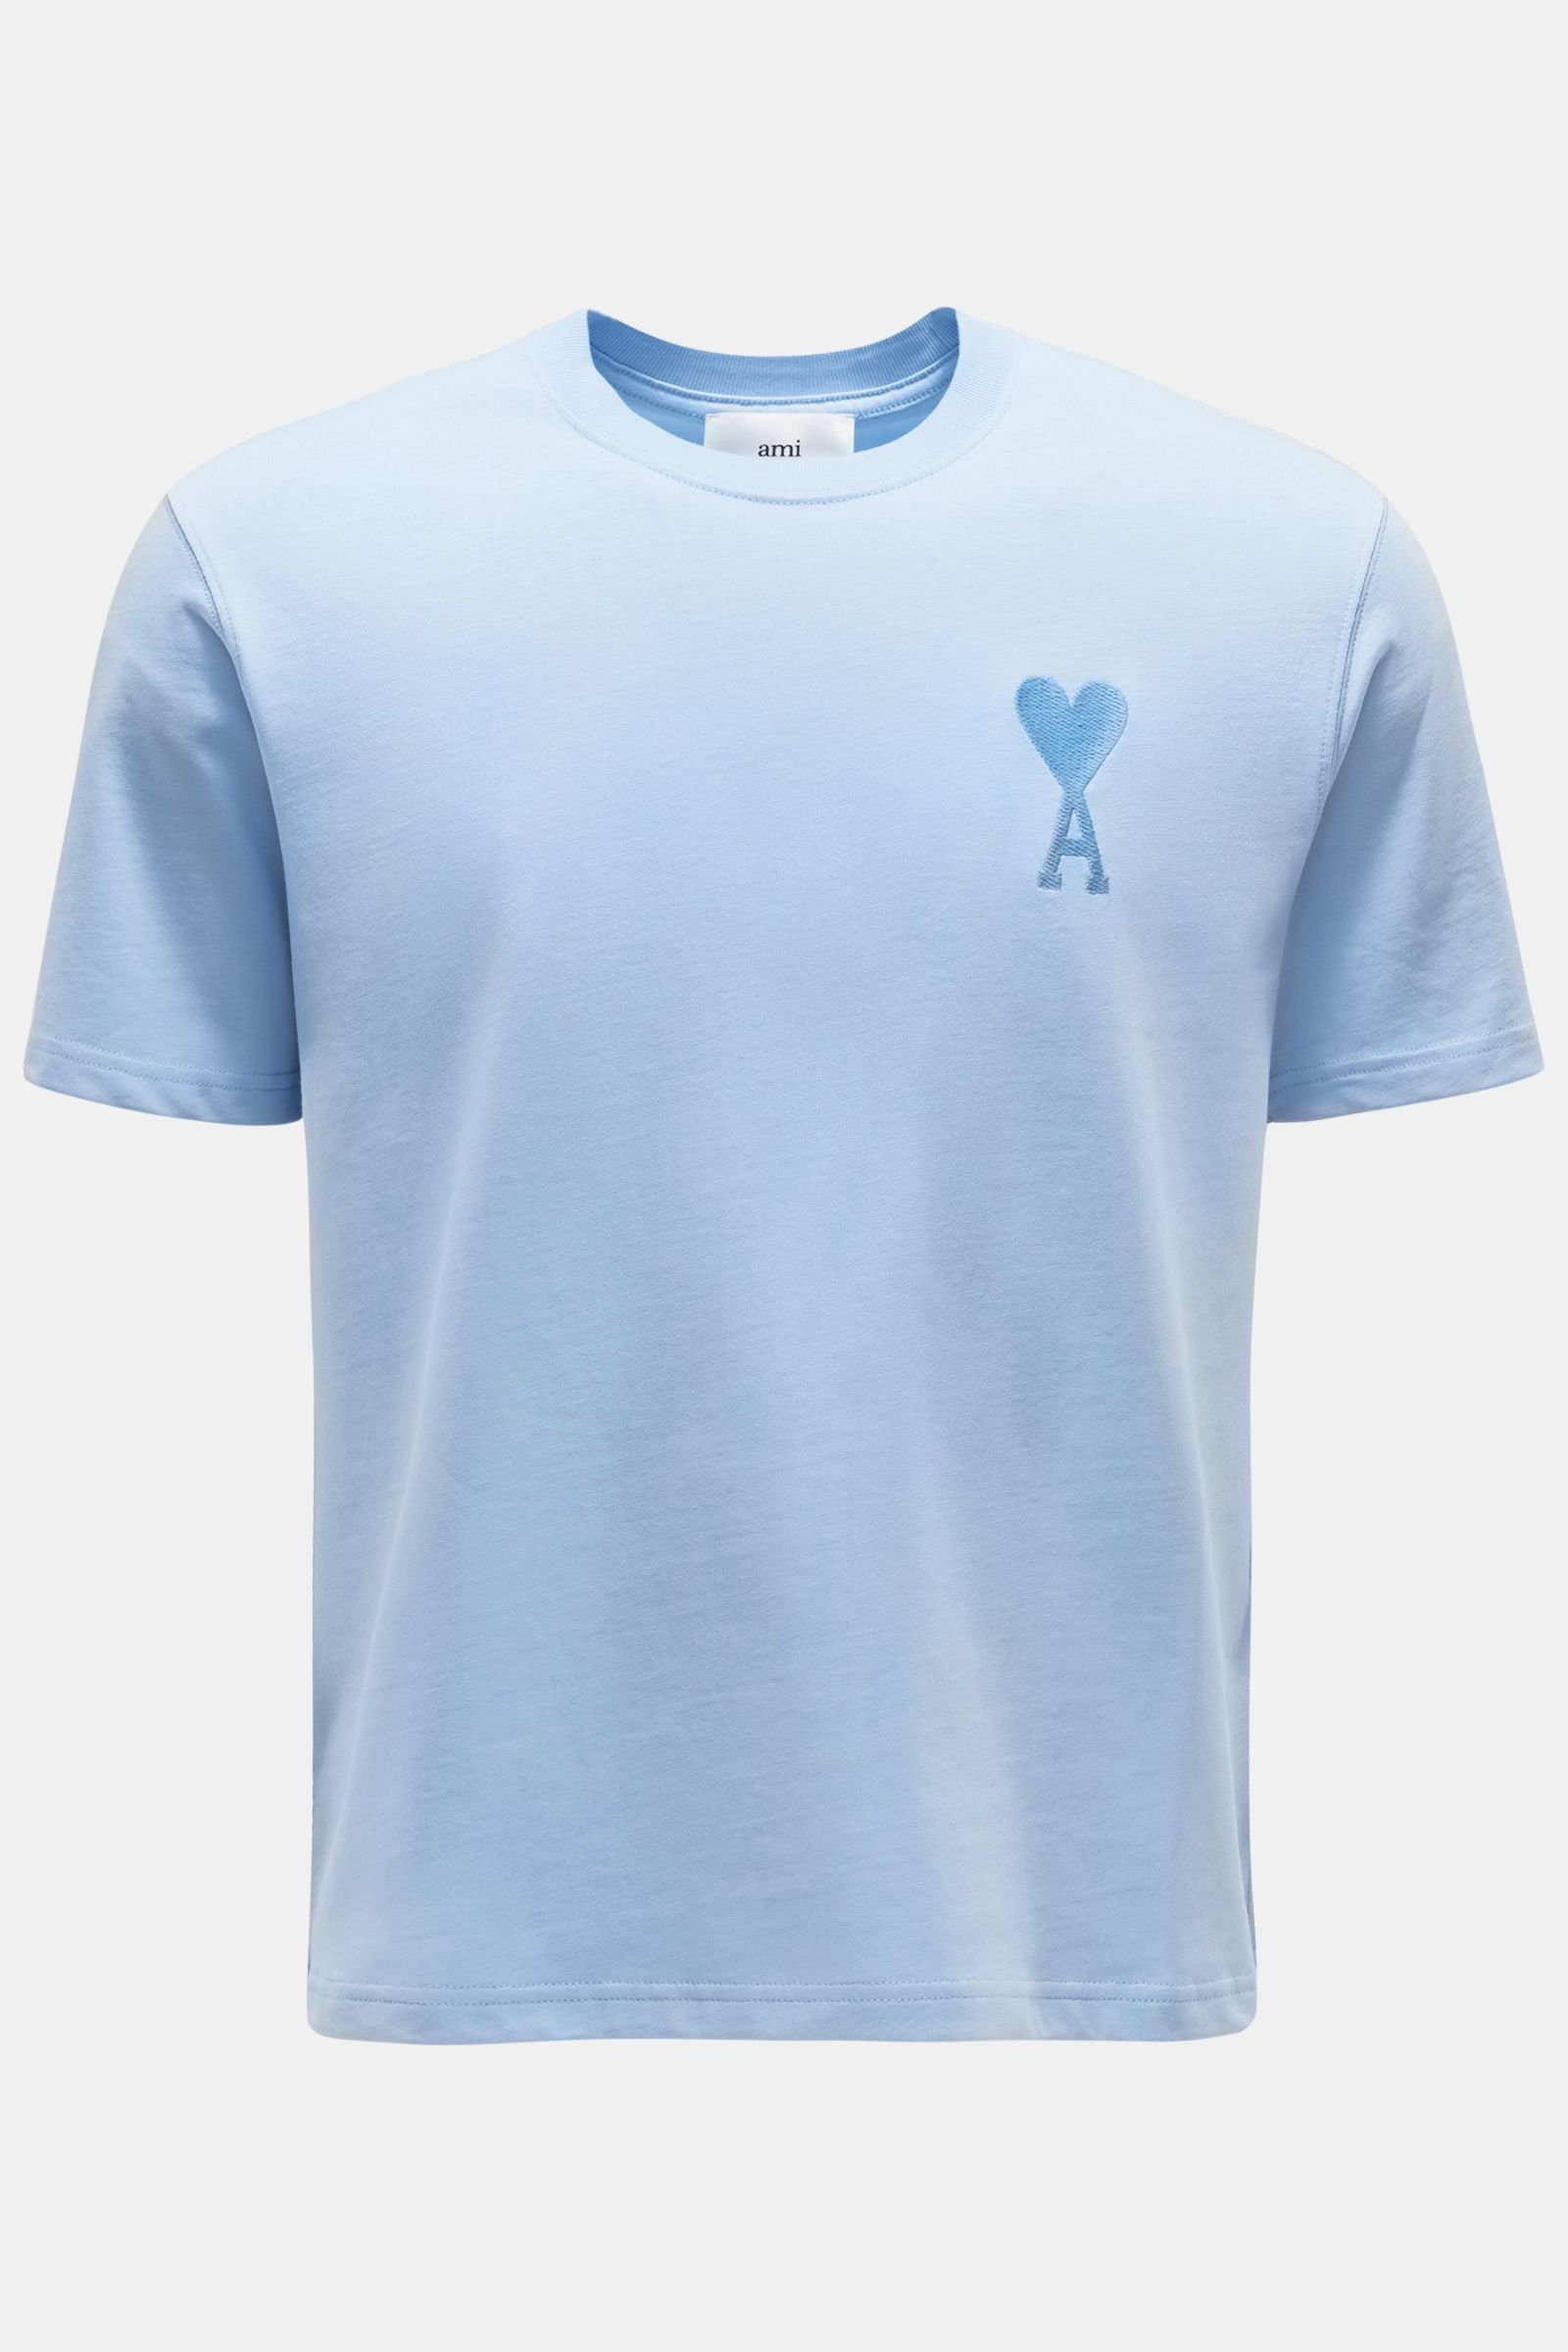 Crew neck T-shirt light blue